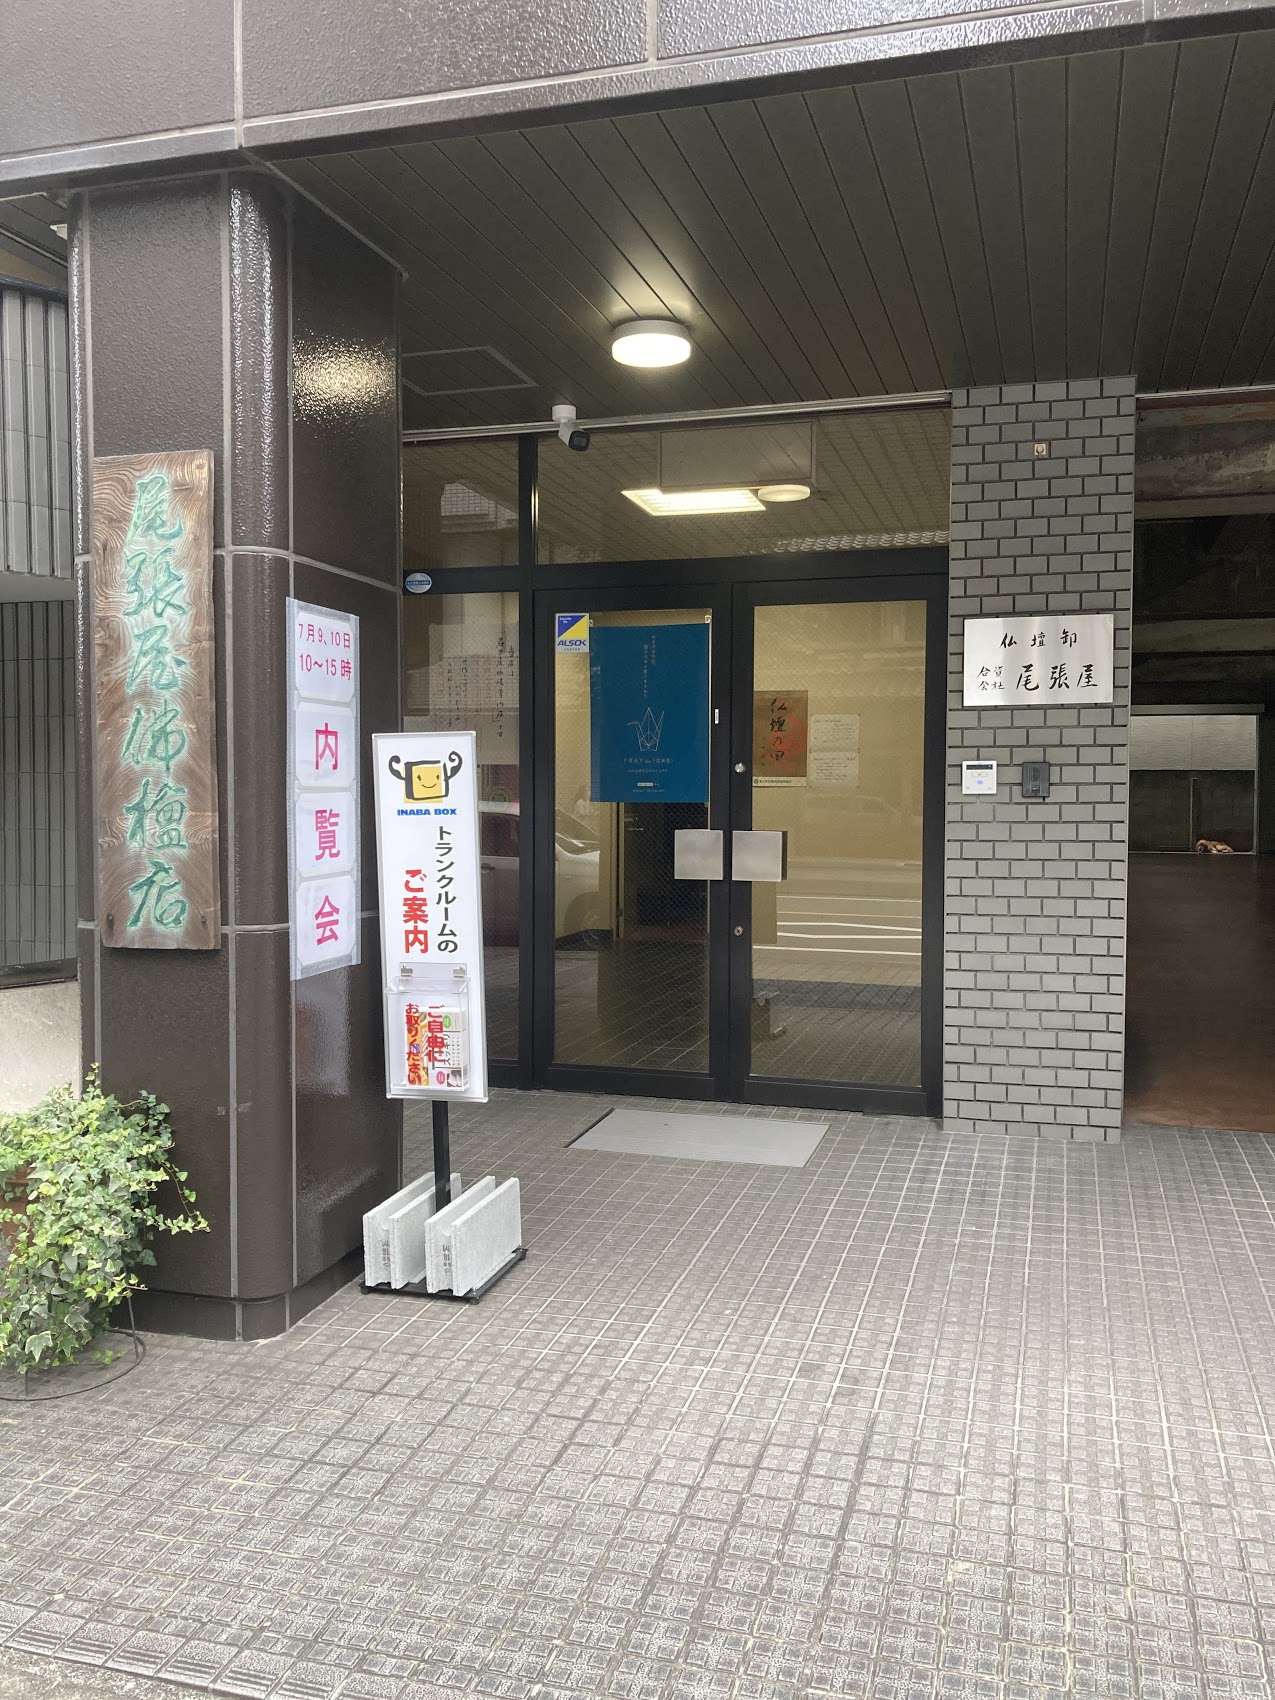 【新規OPEN】橘本町通り店(たちばなほんまちどおり) 1F店舗入口